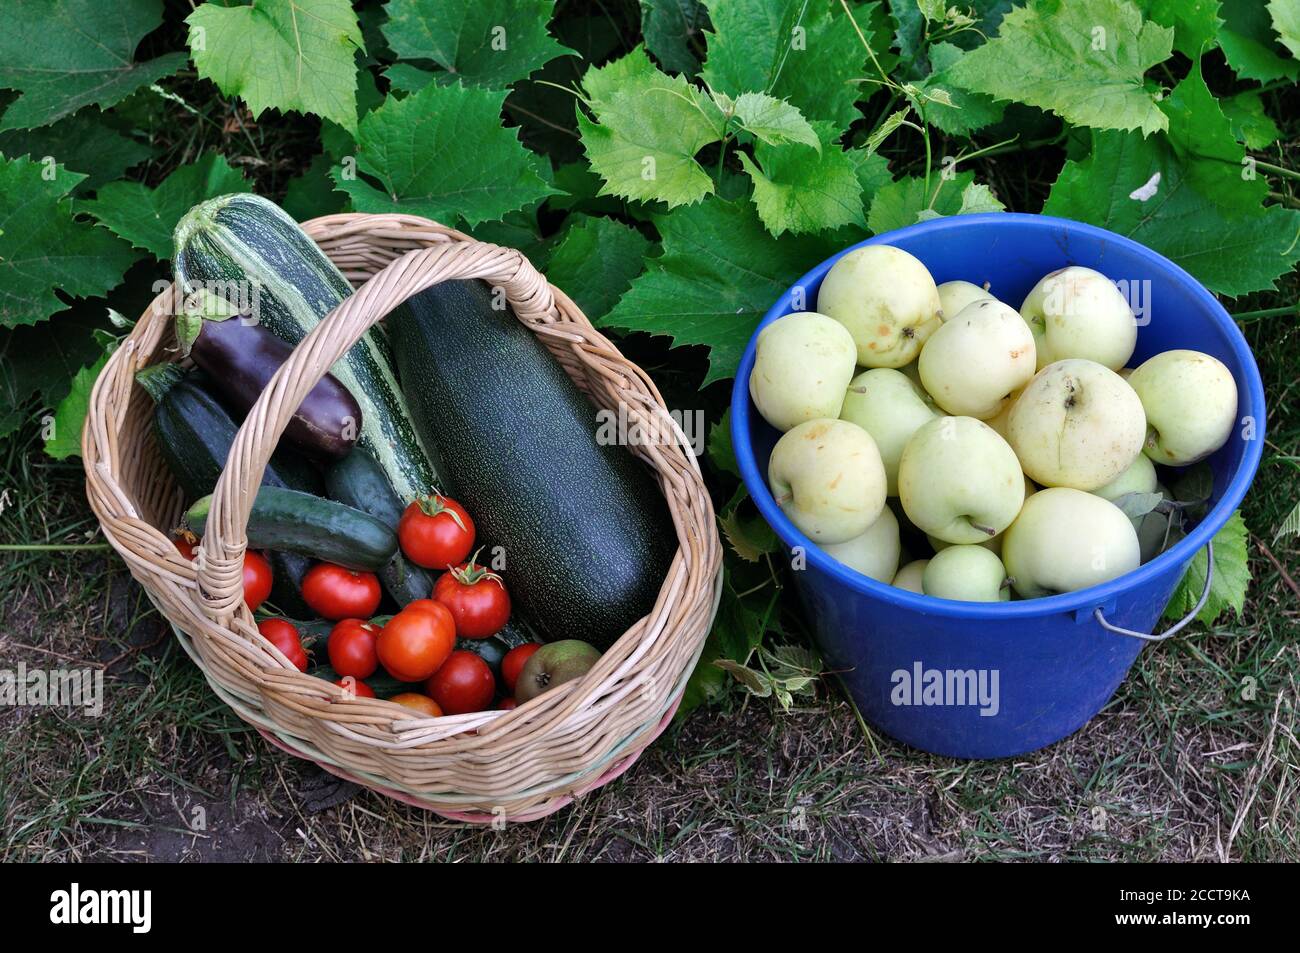 primo piano di mele verdi mature raccolte di recente e diverse sostanze organiche verdure nell'orto Foto Stock